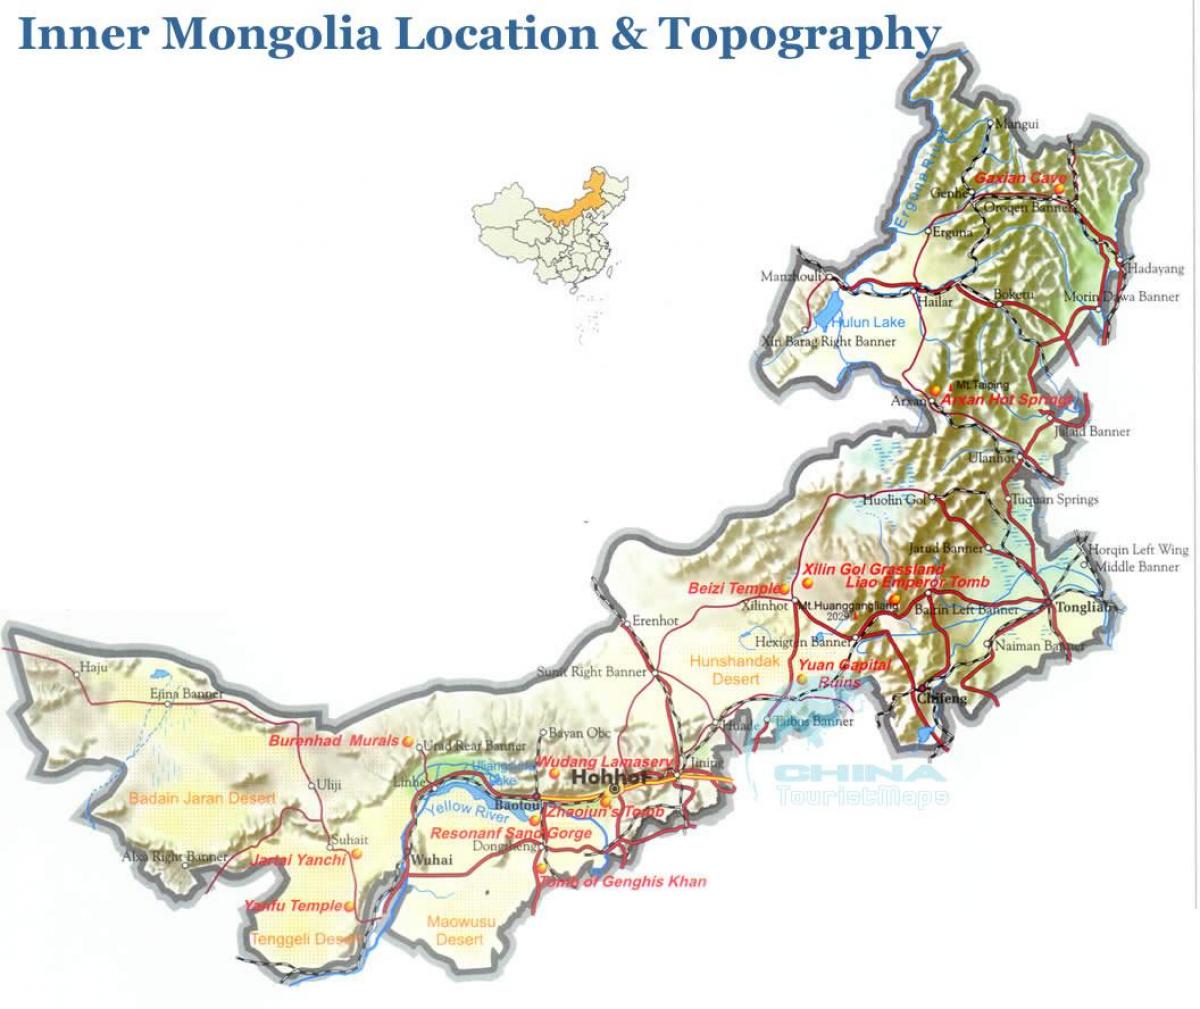 panlabas na Mongolia mapa